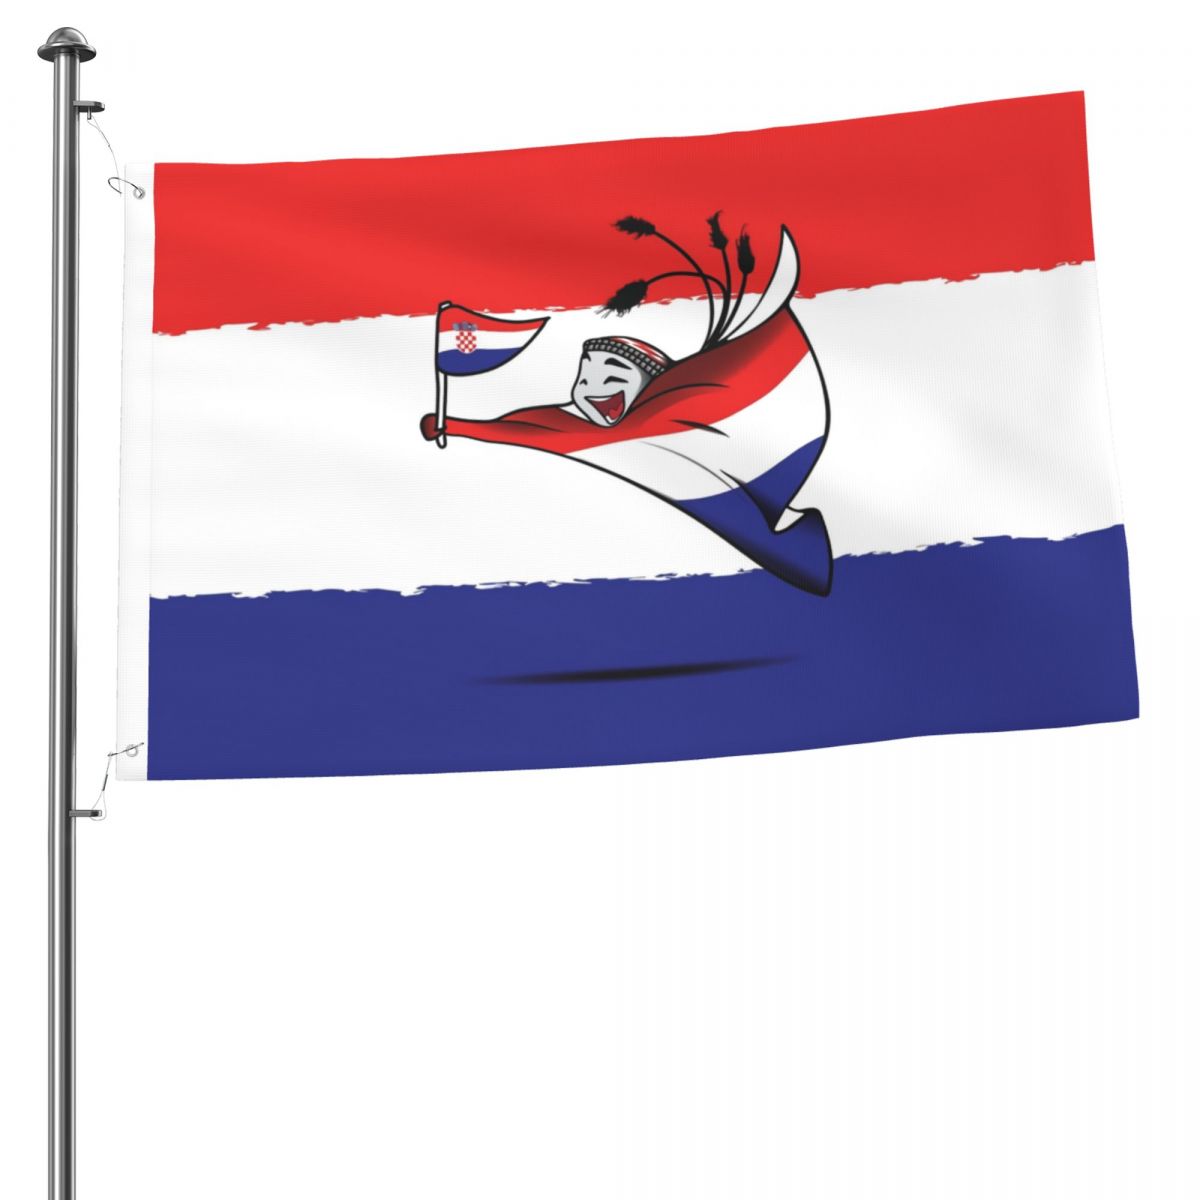 Croatia World Cup 2022 Mascot 2x3 FT UV Resistant Flag